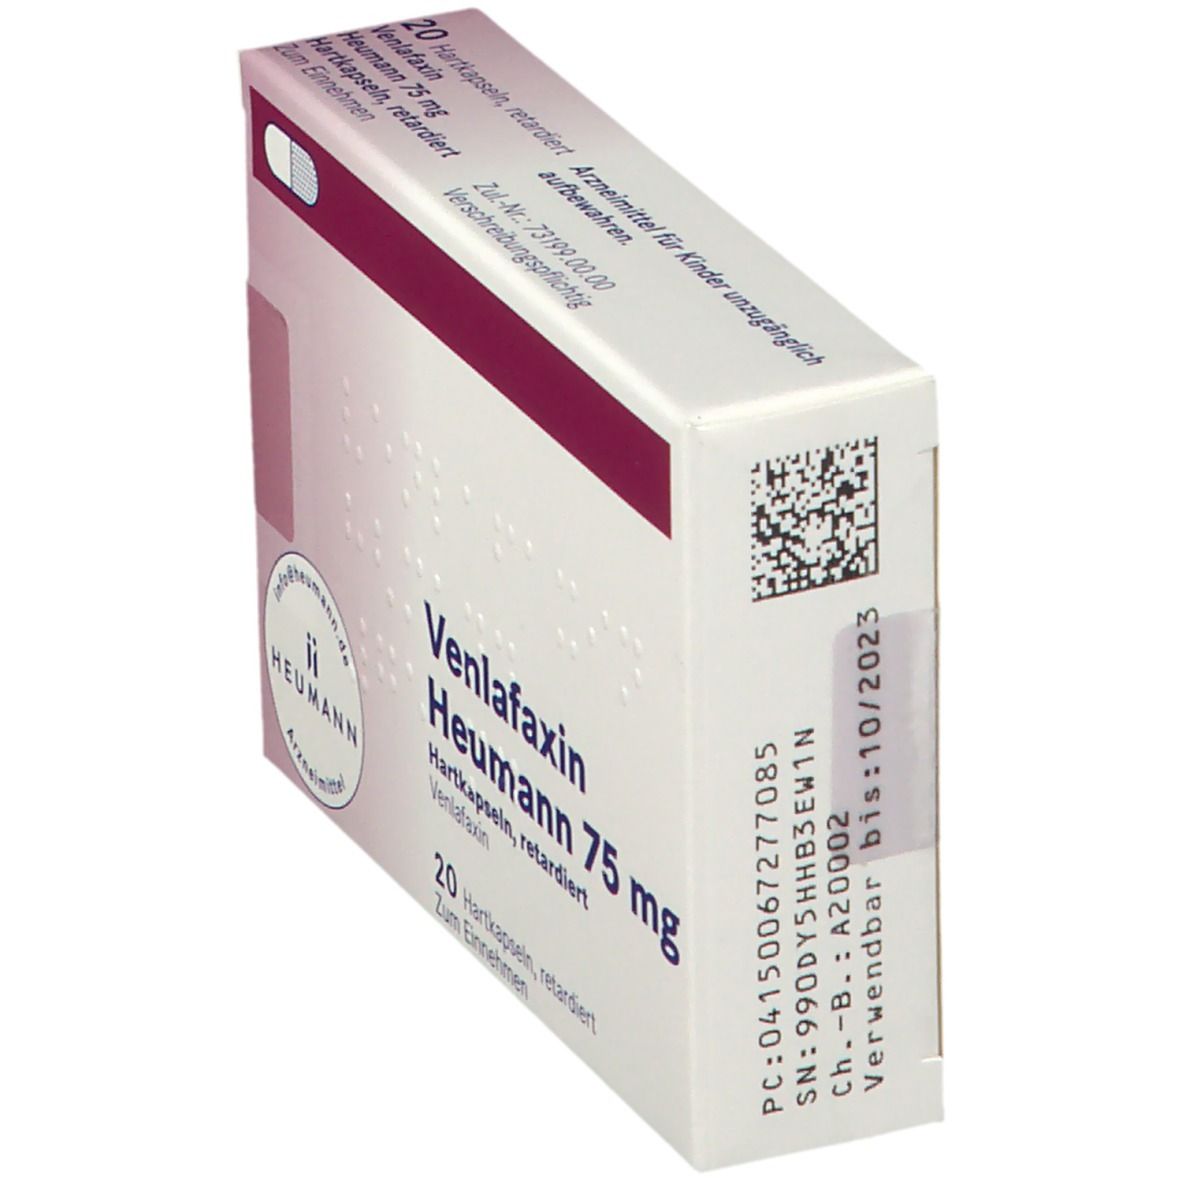 Venlafaxin Heumann 75 mg Hartkapseln, retardiert